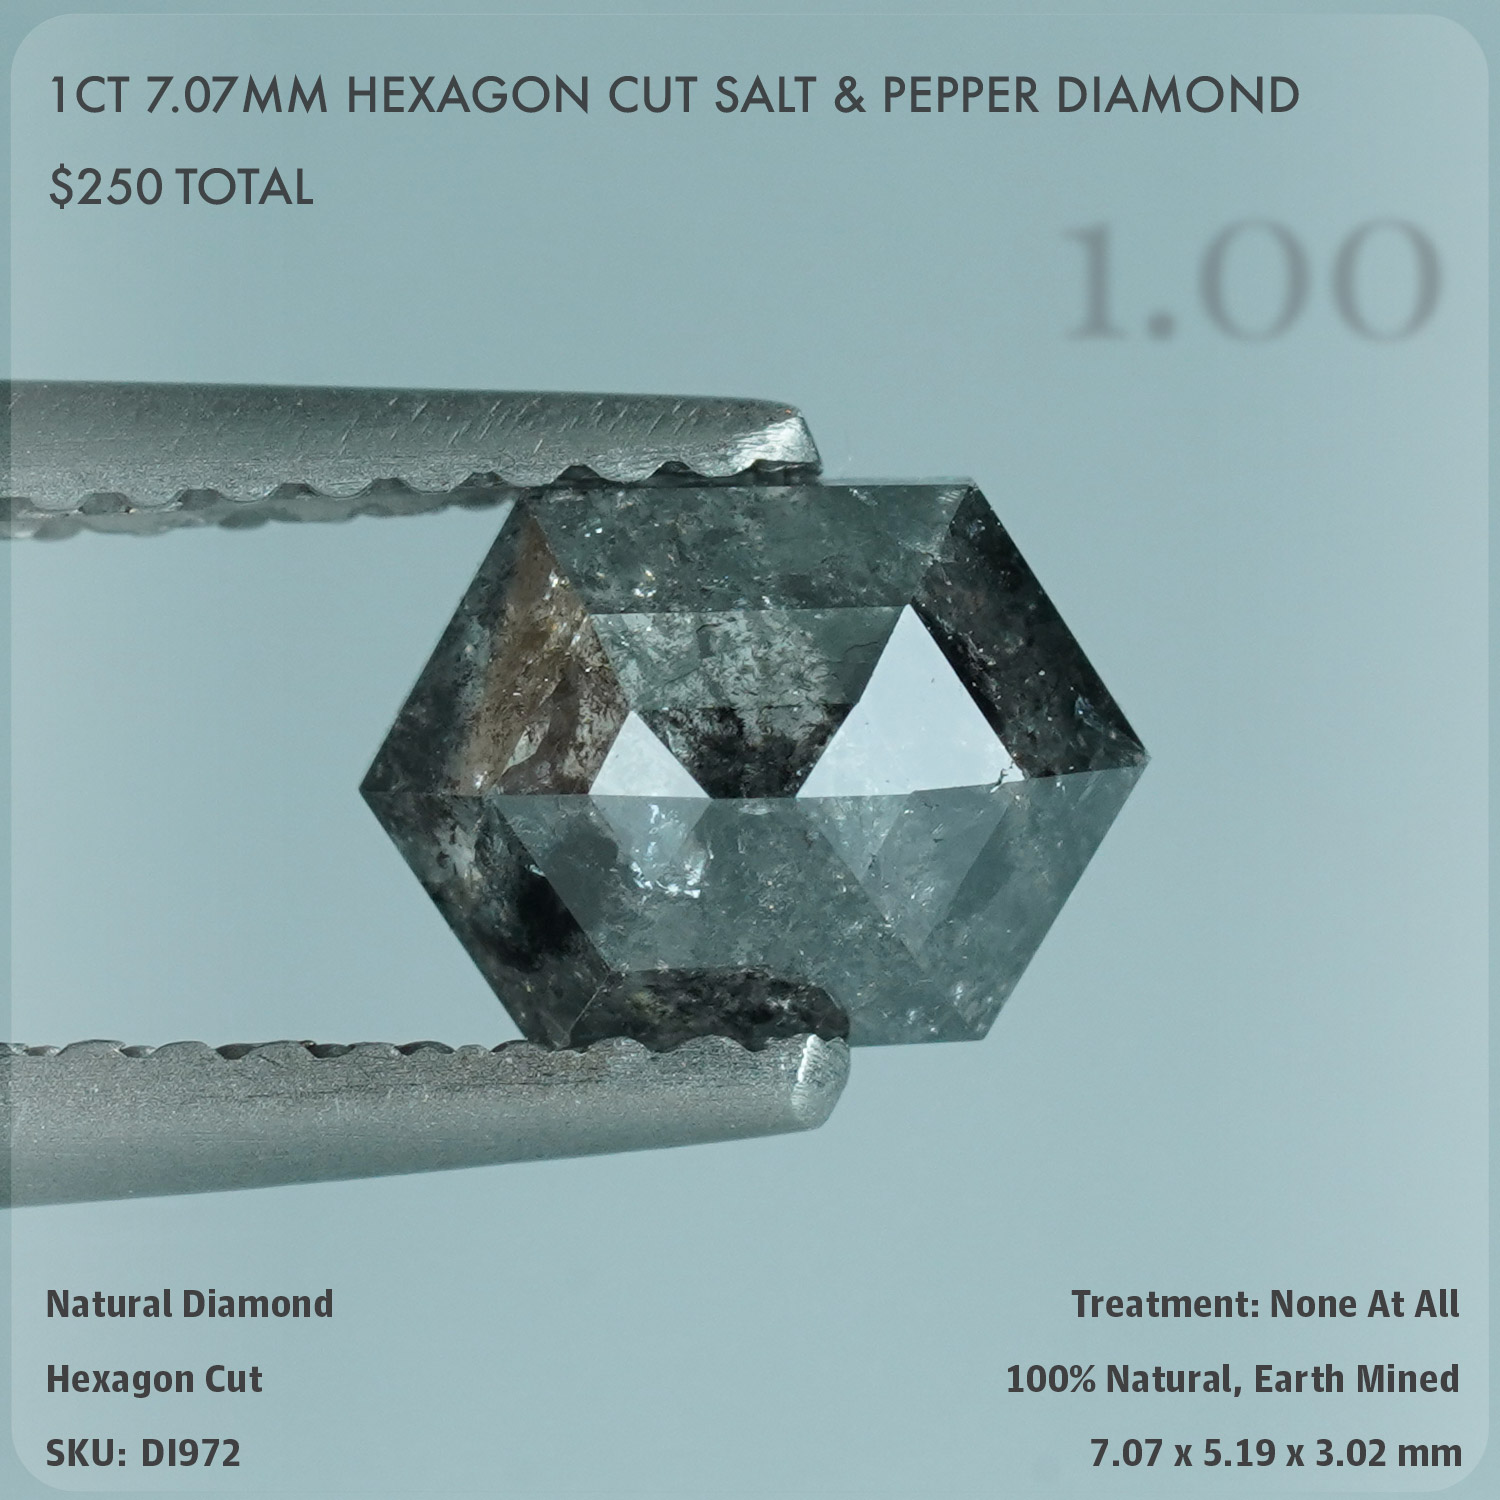 1CT 7.07mm Hexagon Cut Salt & Pepper Diamond